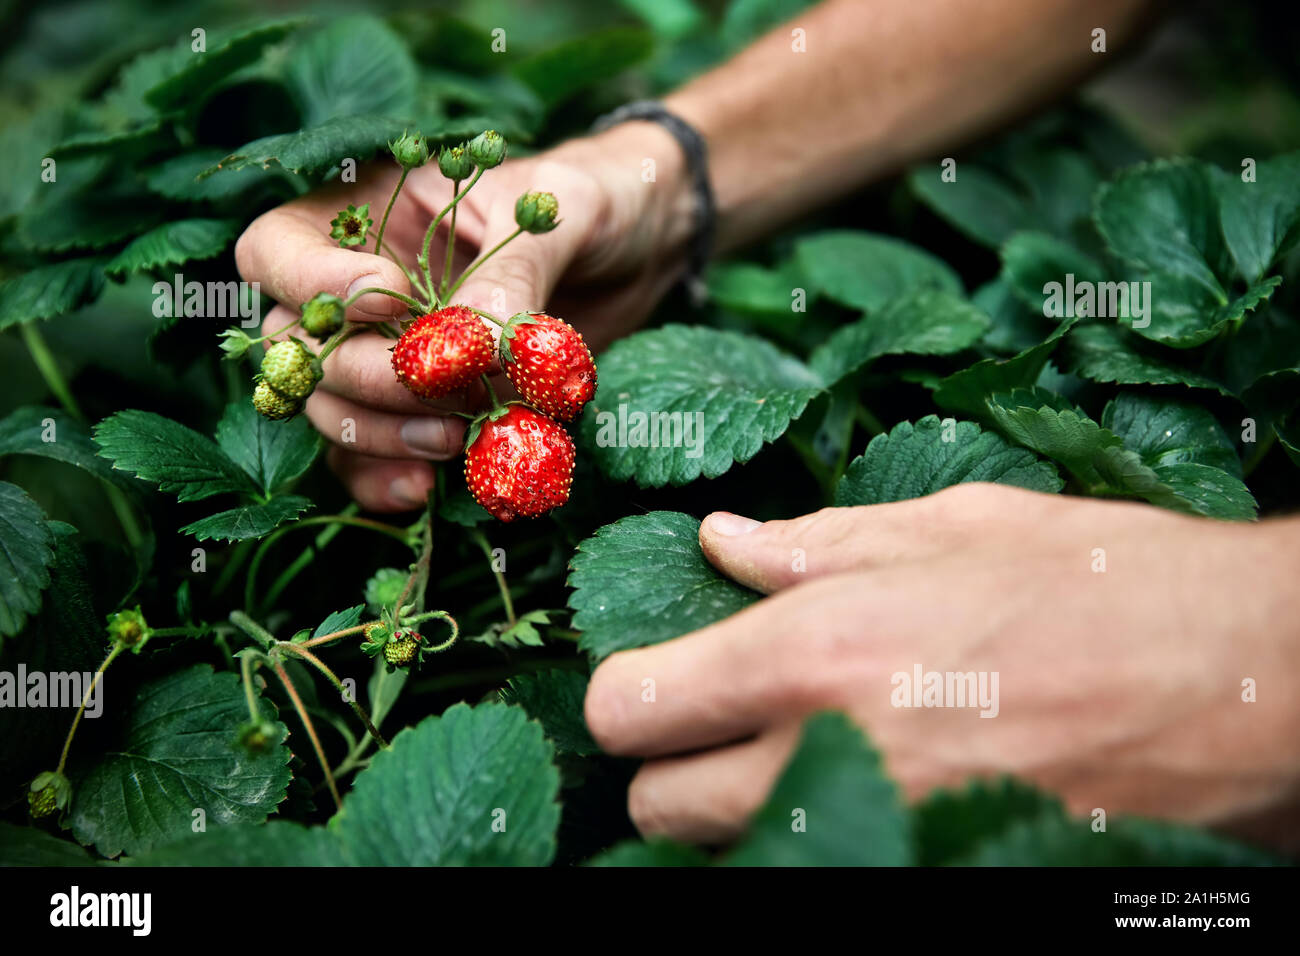 Bauer ist die Kommissionierung rote reife Erdbeere in seinem Gewächshaus. Natürliche Landwirtschaft und gesunde Ernährung Konzept Stockfoto